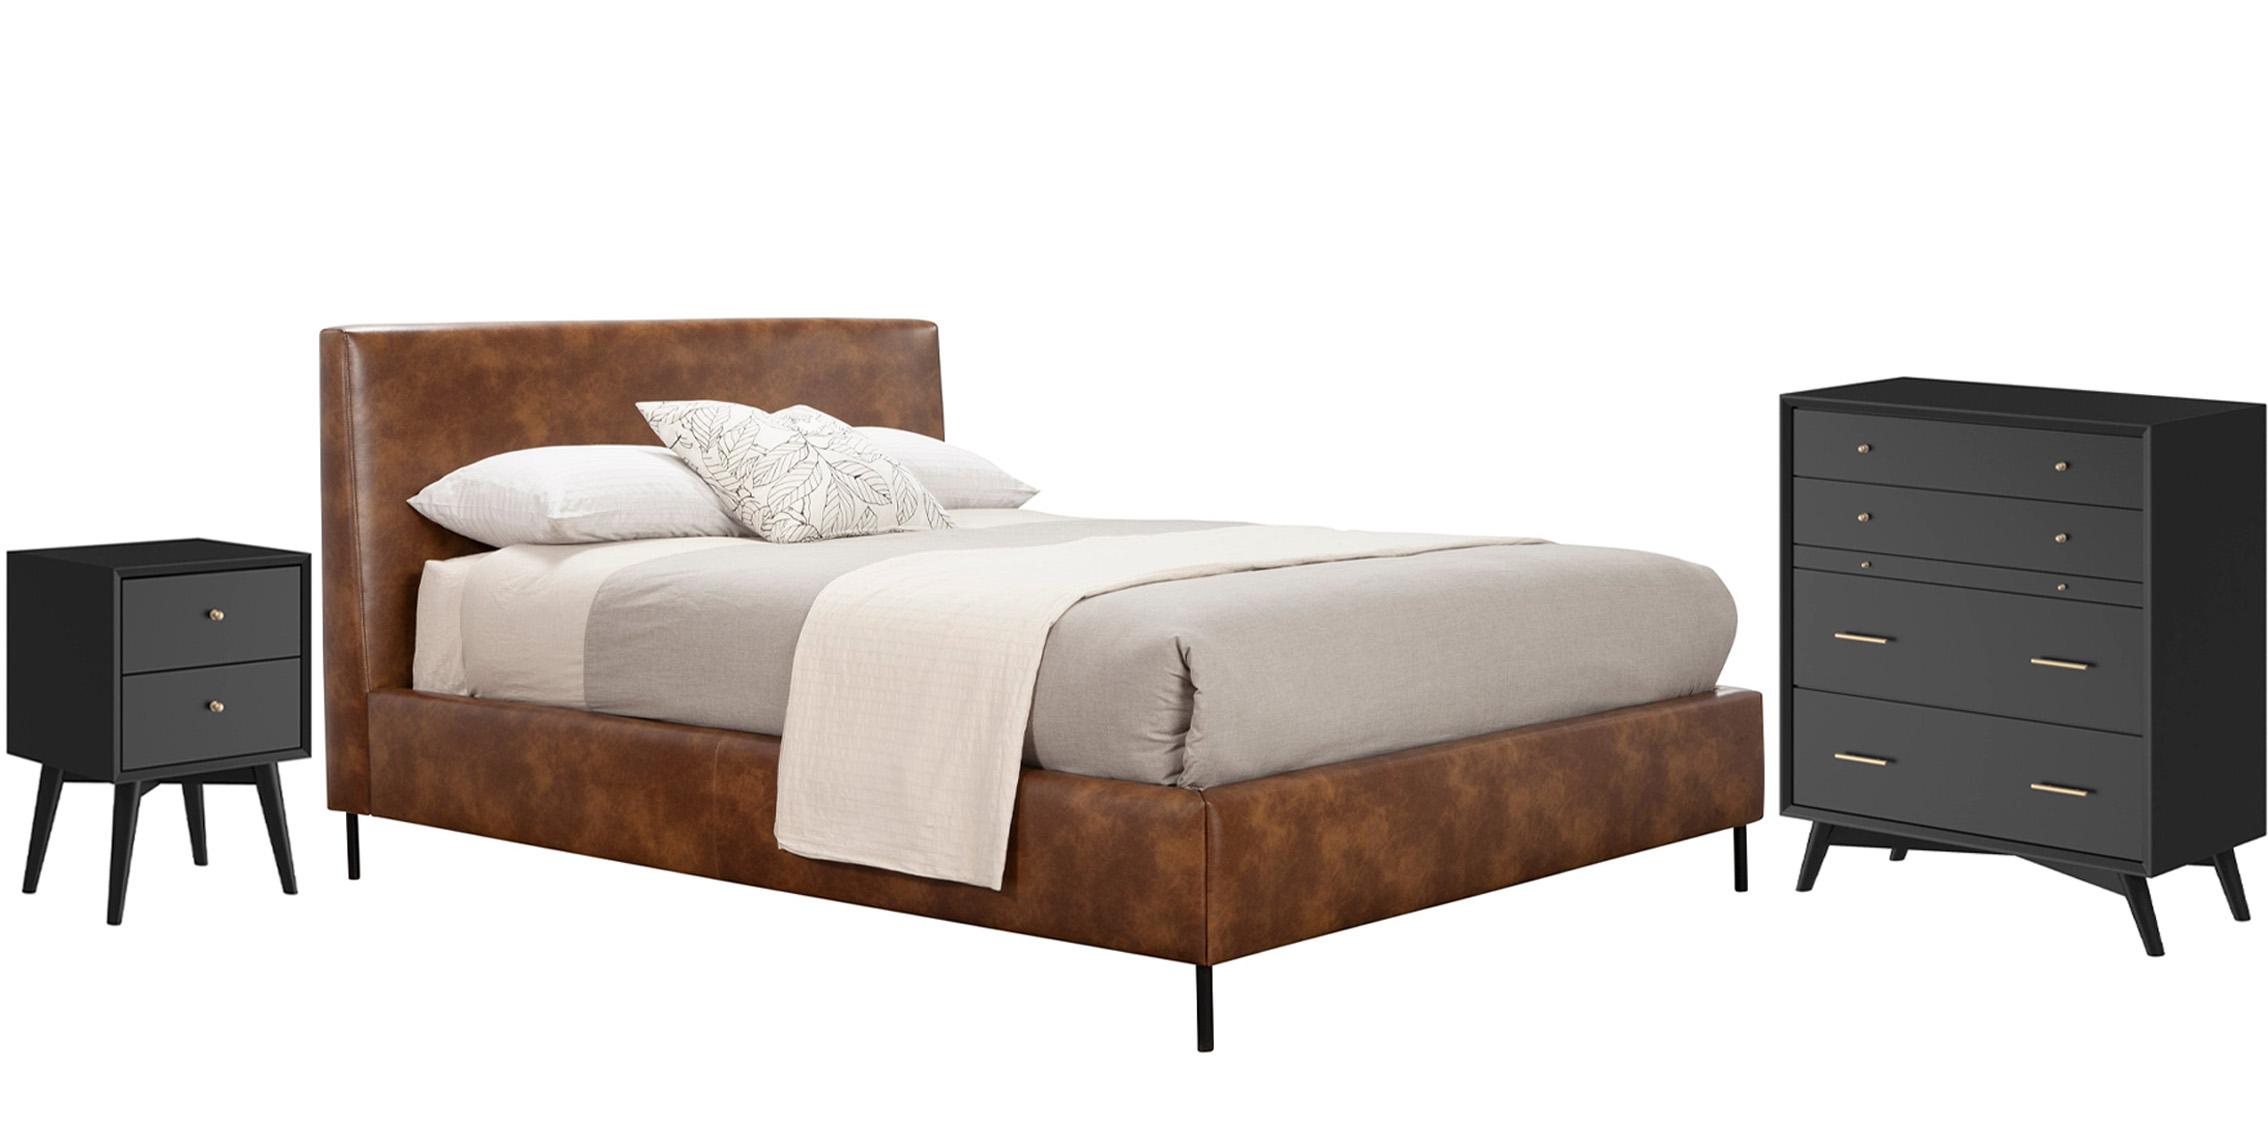 Modern, Rustic Platform Bedroom Set SOPHIA/FLYNN 6902EK-BRN-Set-3-BLK in Brown, Black Faux Leather